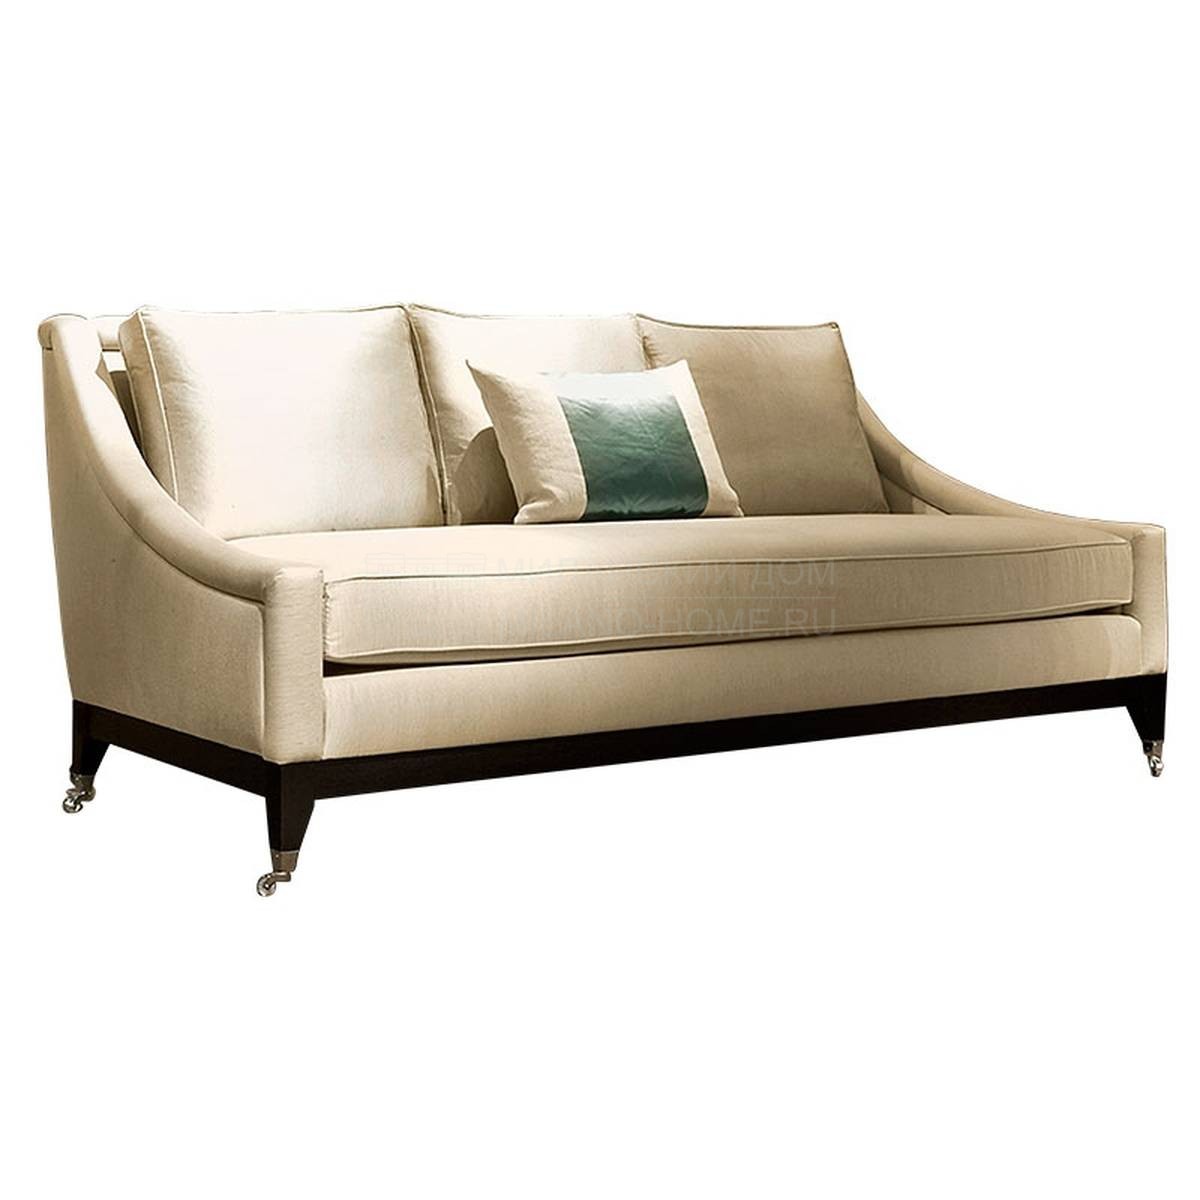 Прямой диван Amelie/ sofa из Италии фабрики SOFTHOUSE